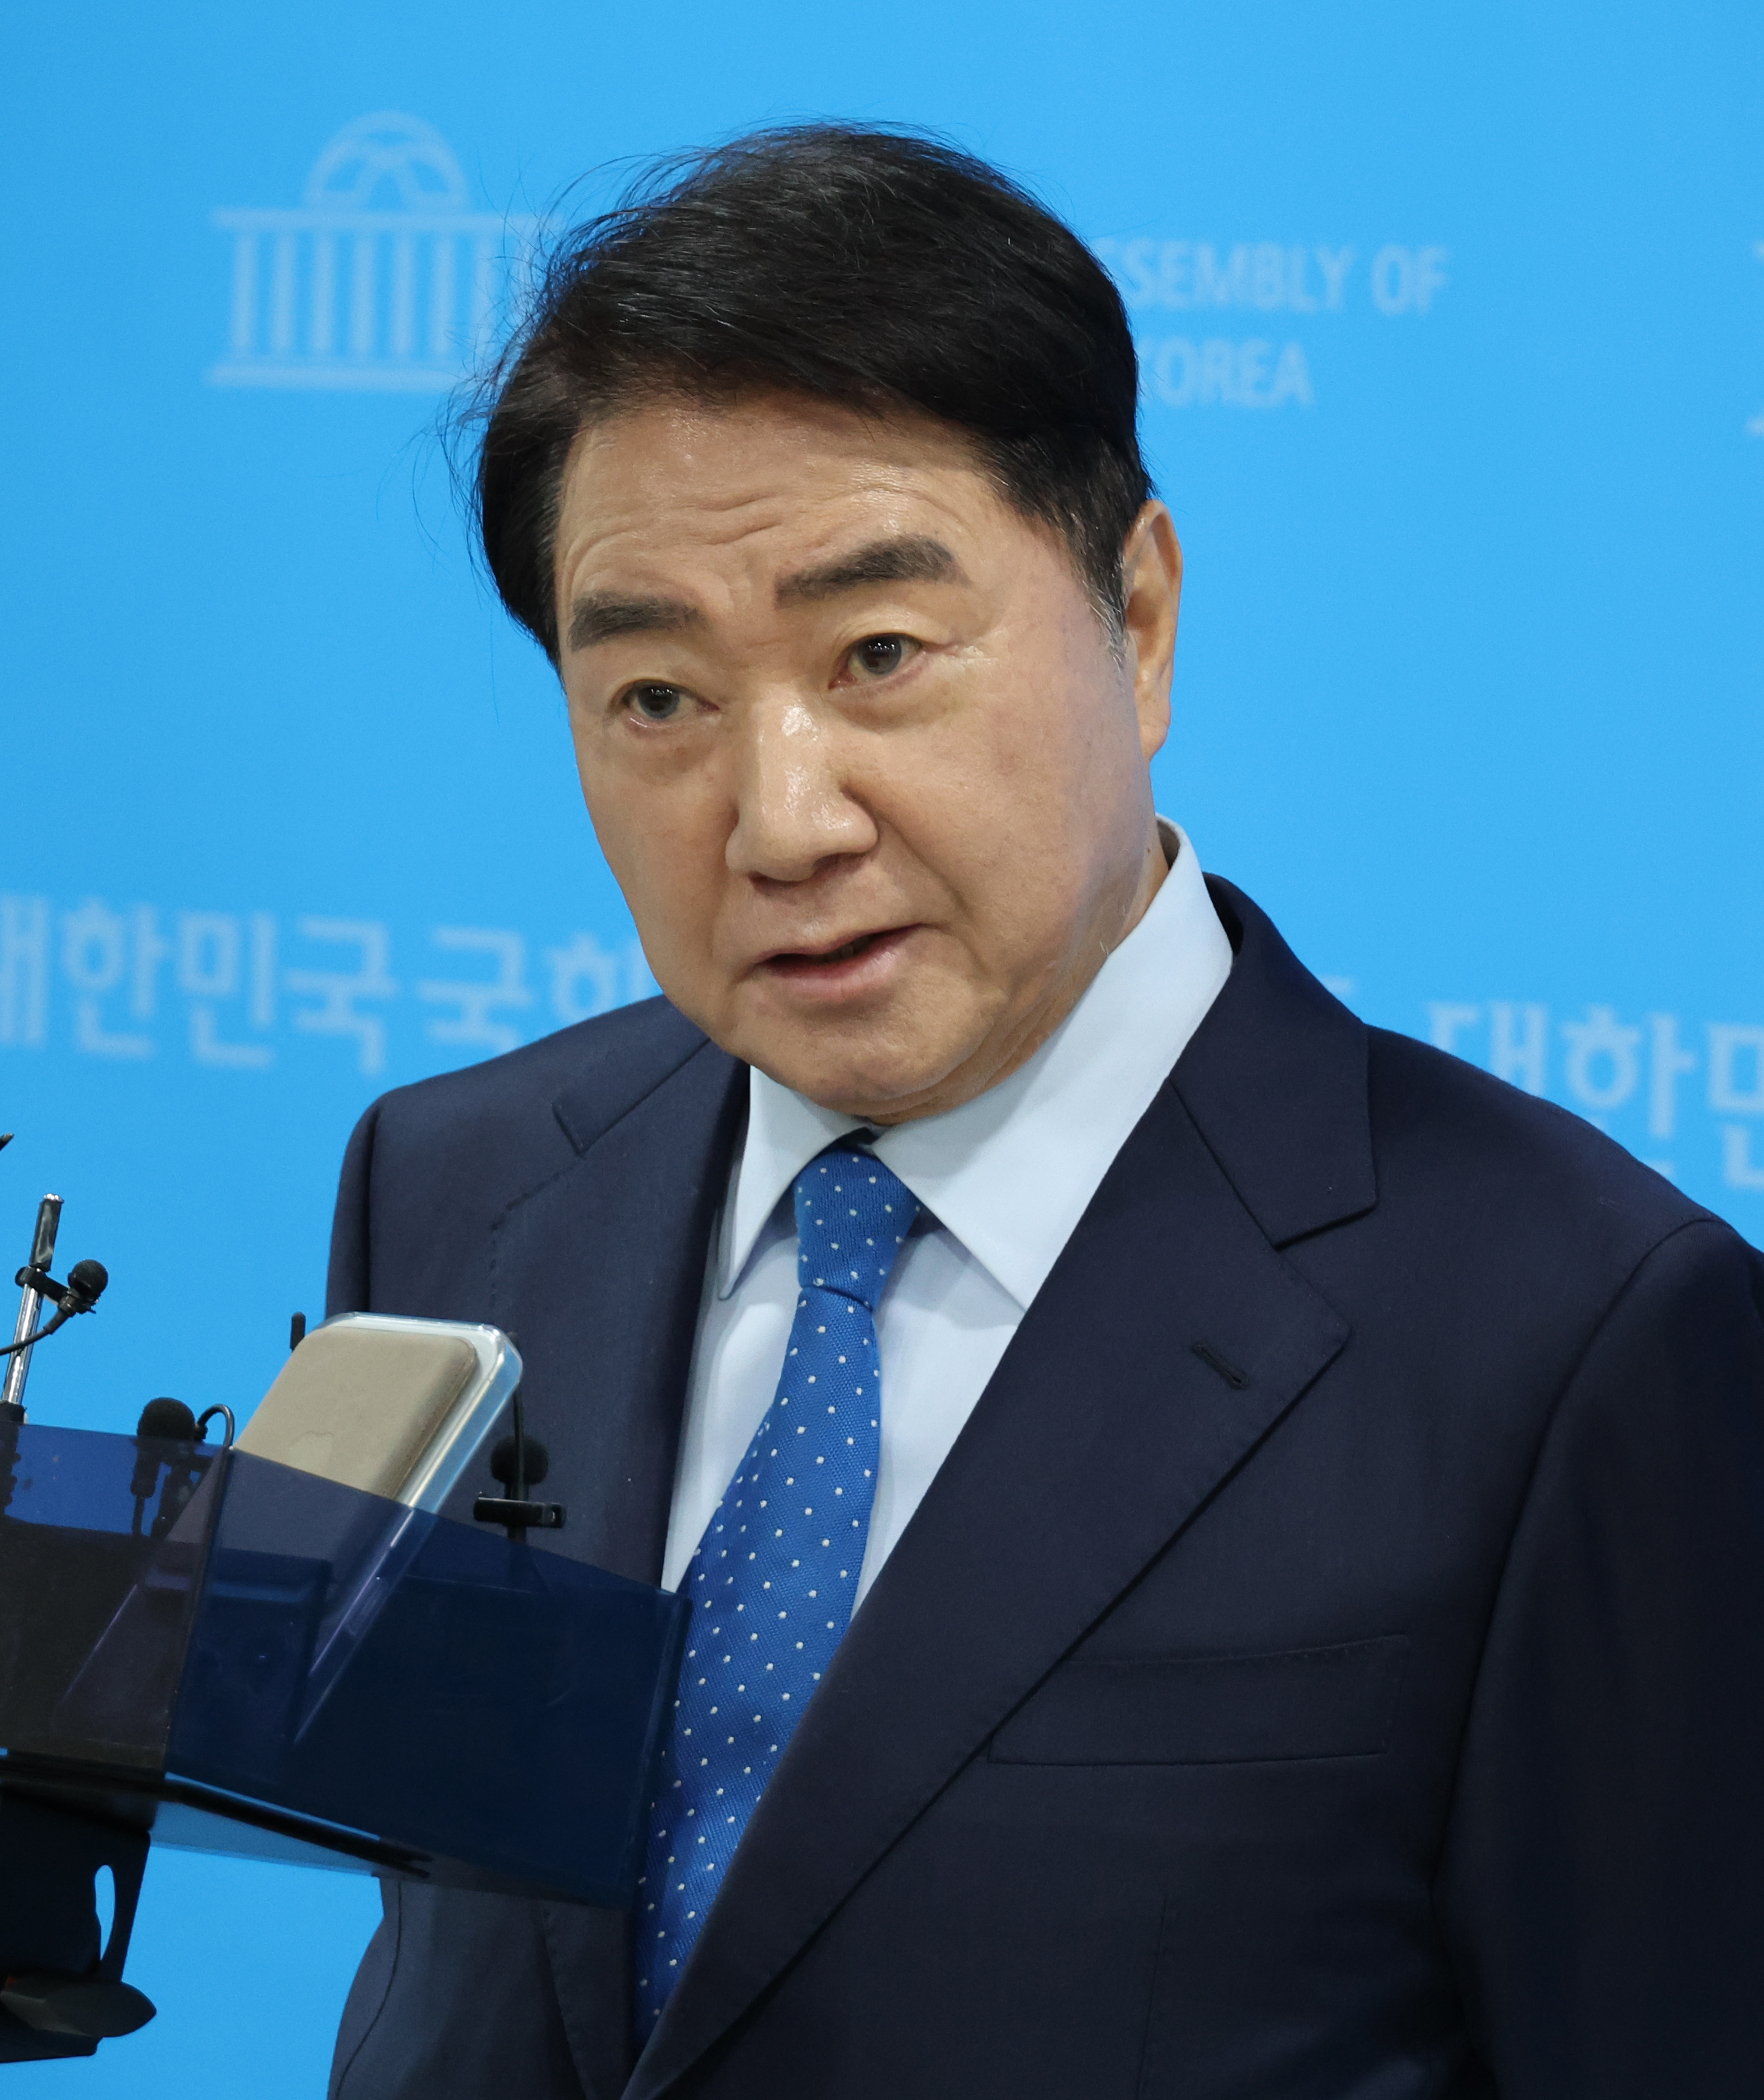 이석현 전 국회부의장, 민주당 탈당